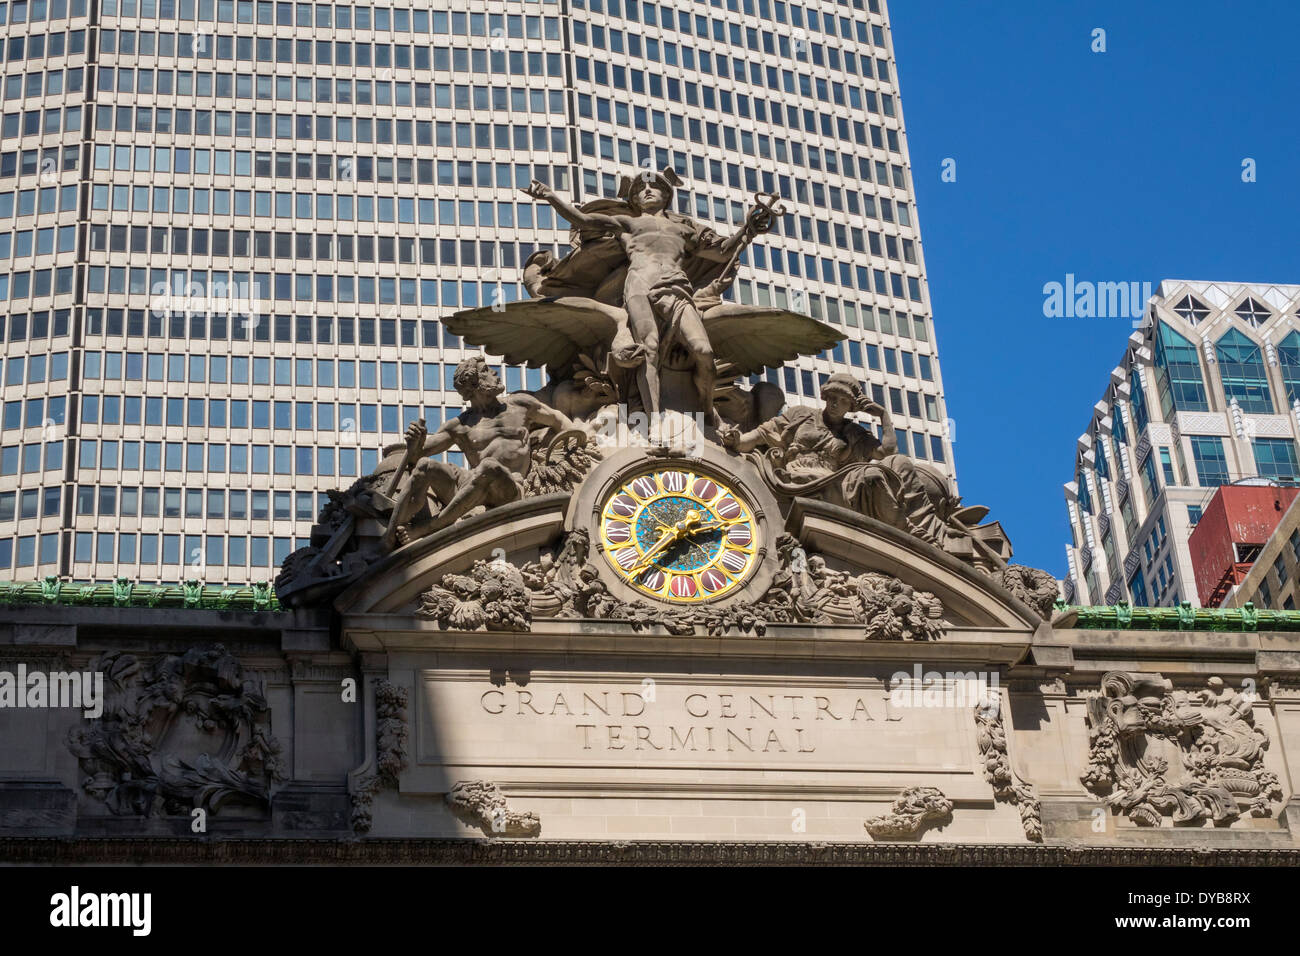 L'ingresso principale al Grand Central Terminal con il mercurio e il clock e MetLife Building Foto Stock